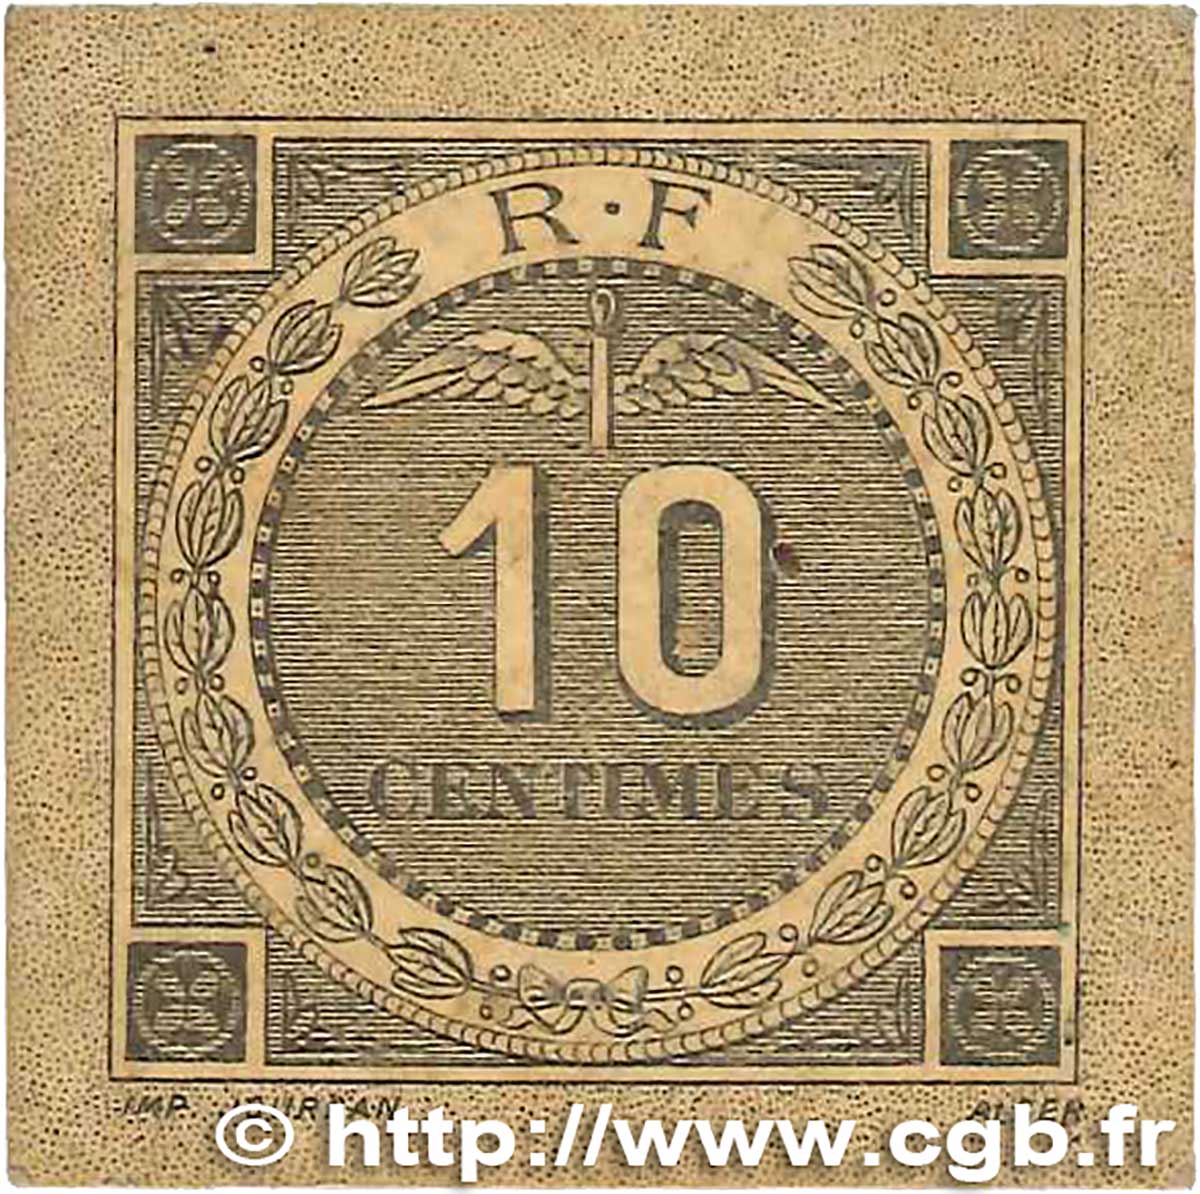 10 Centimes FRANCE régionalisme et divers Bougie, Sétif 1916 JP.139.10 TTB+